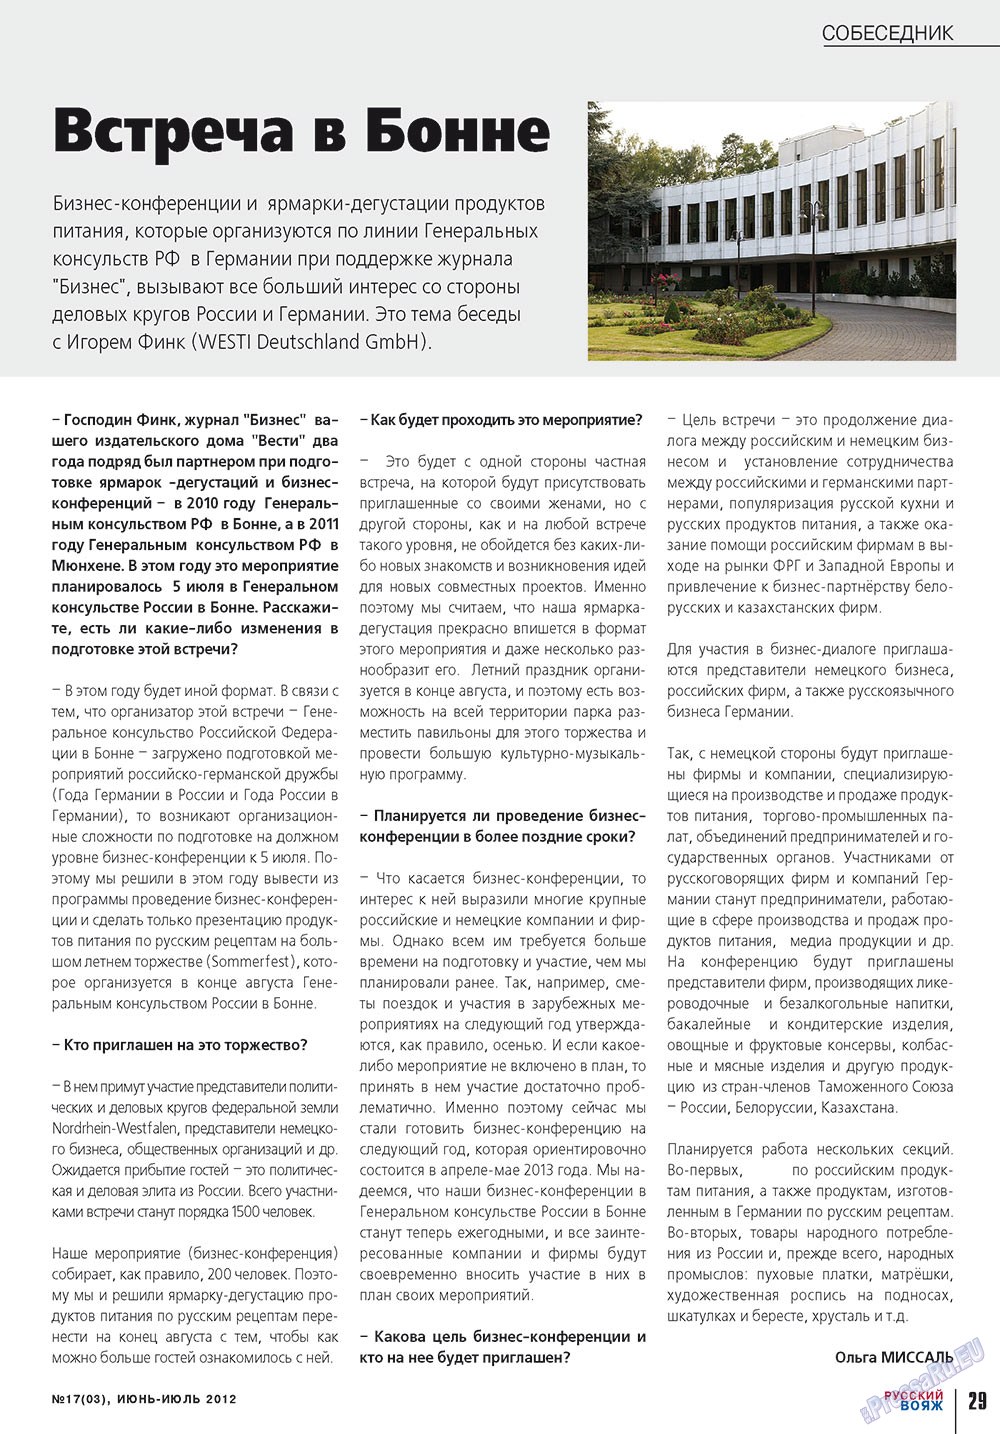 Русский вояж (журнал). 2012 год, номер 17, стр. 29